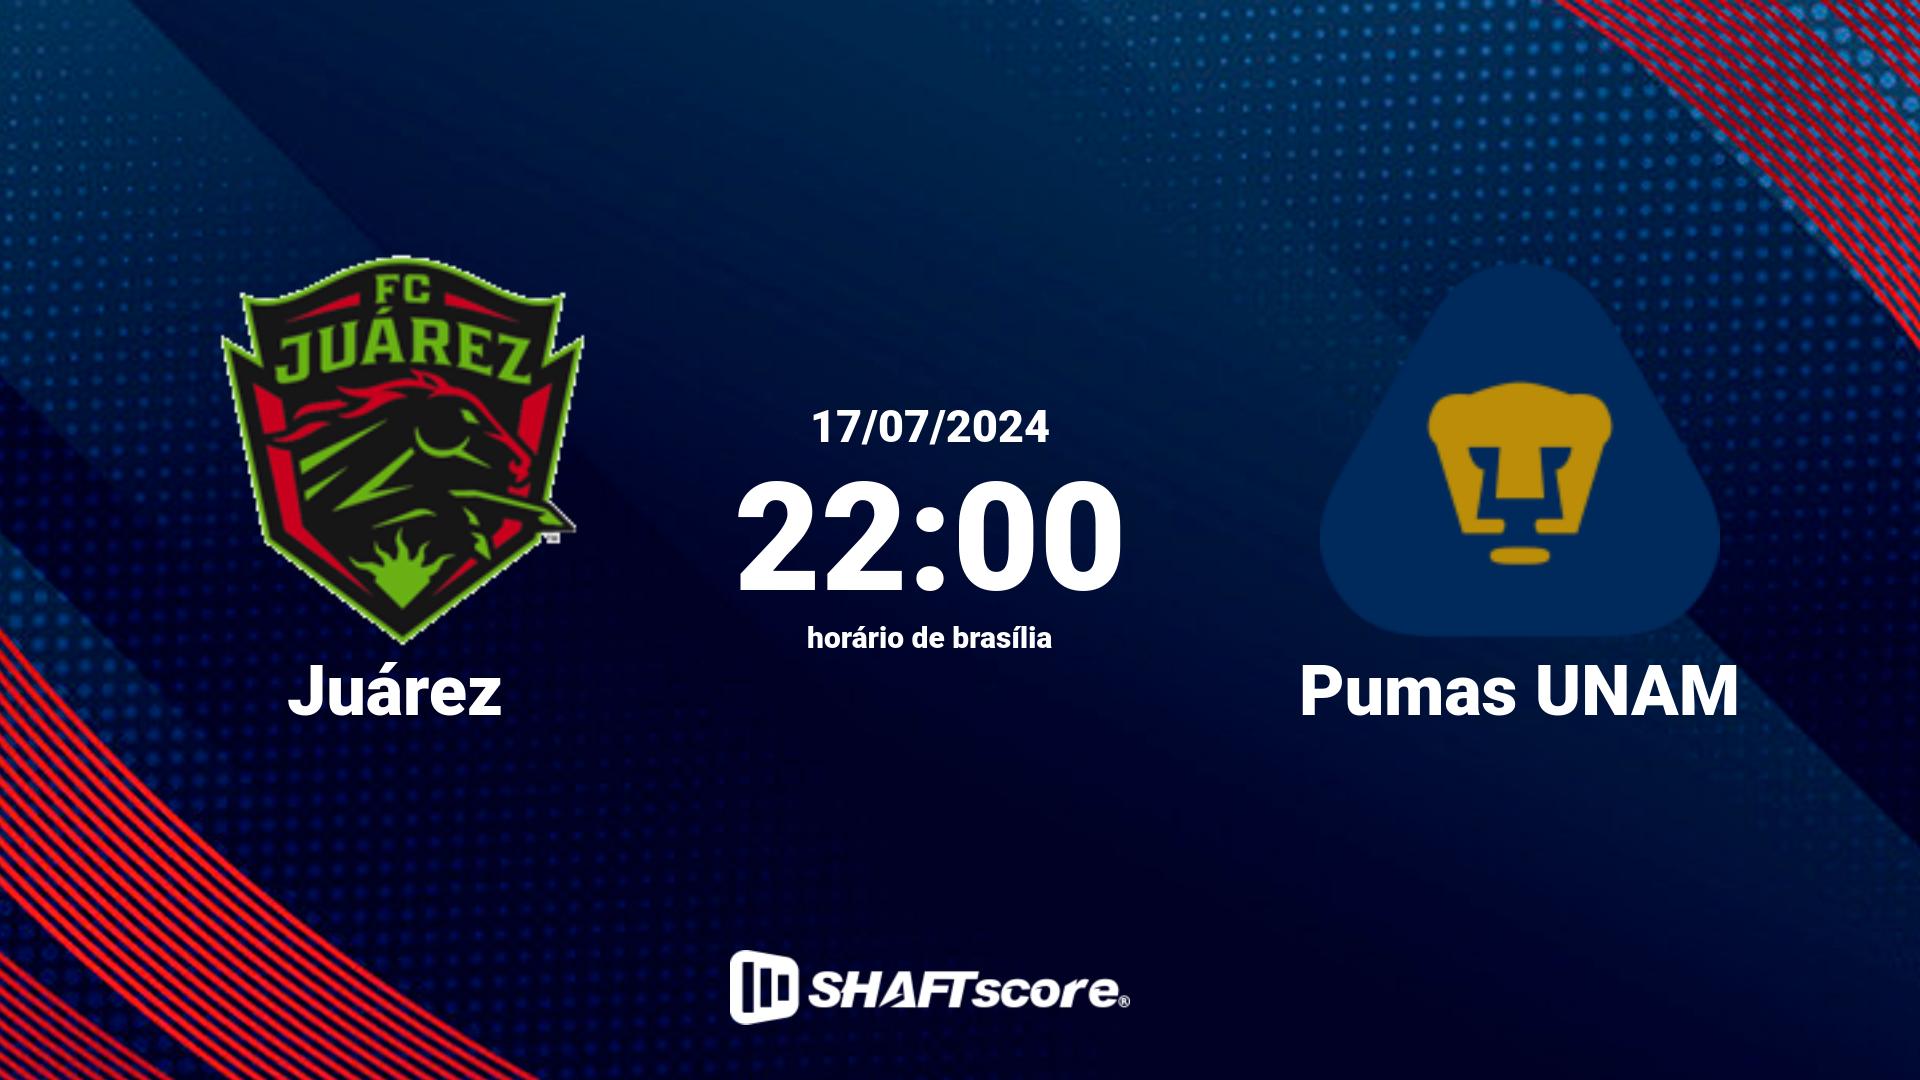 Estatísticas do jogo Juárez vs Pumas UNAM 17.07 22:00